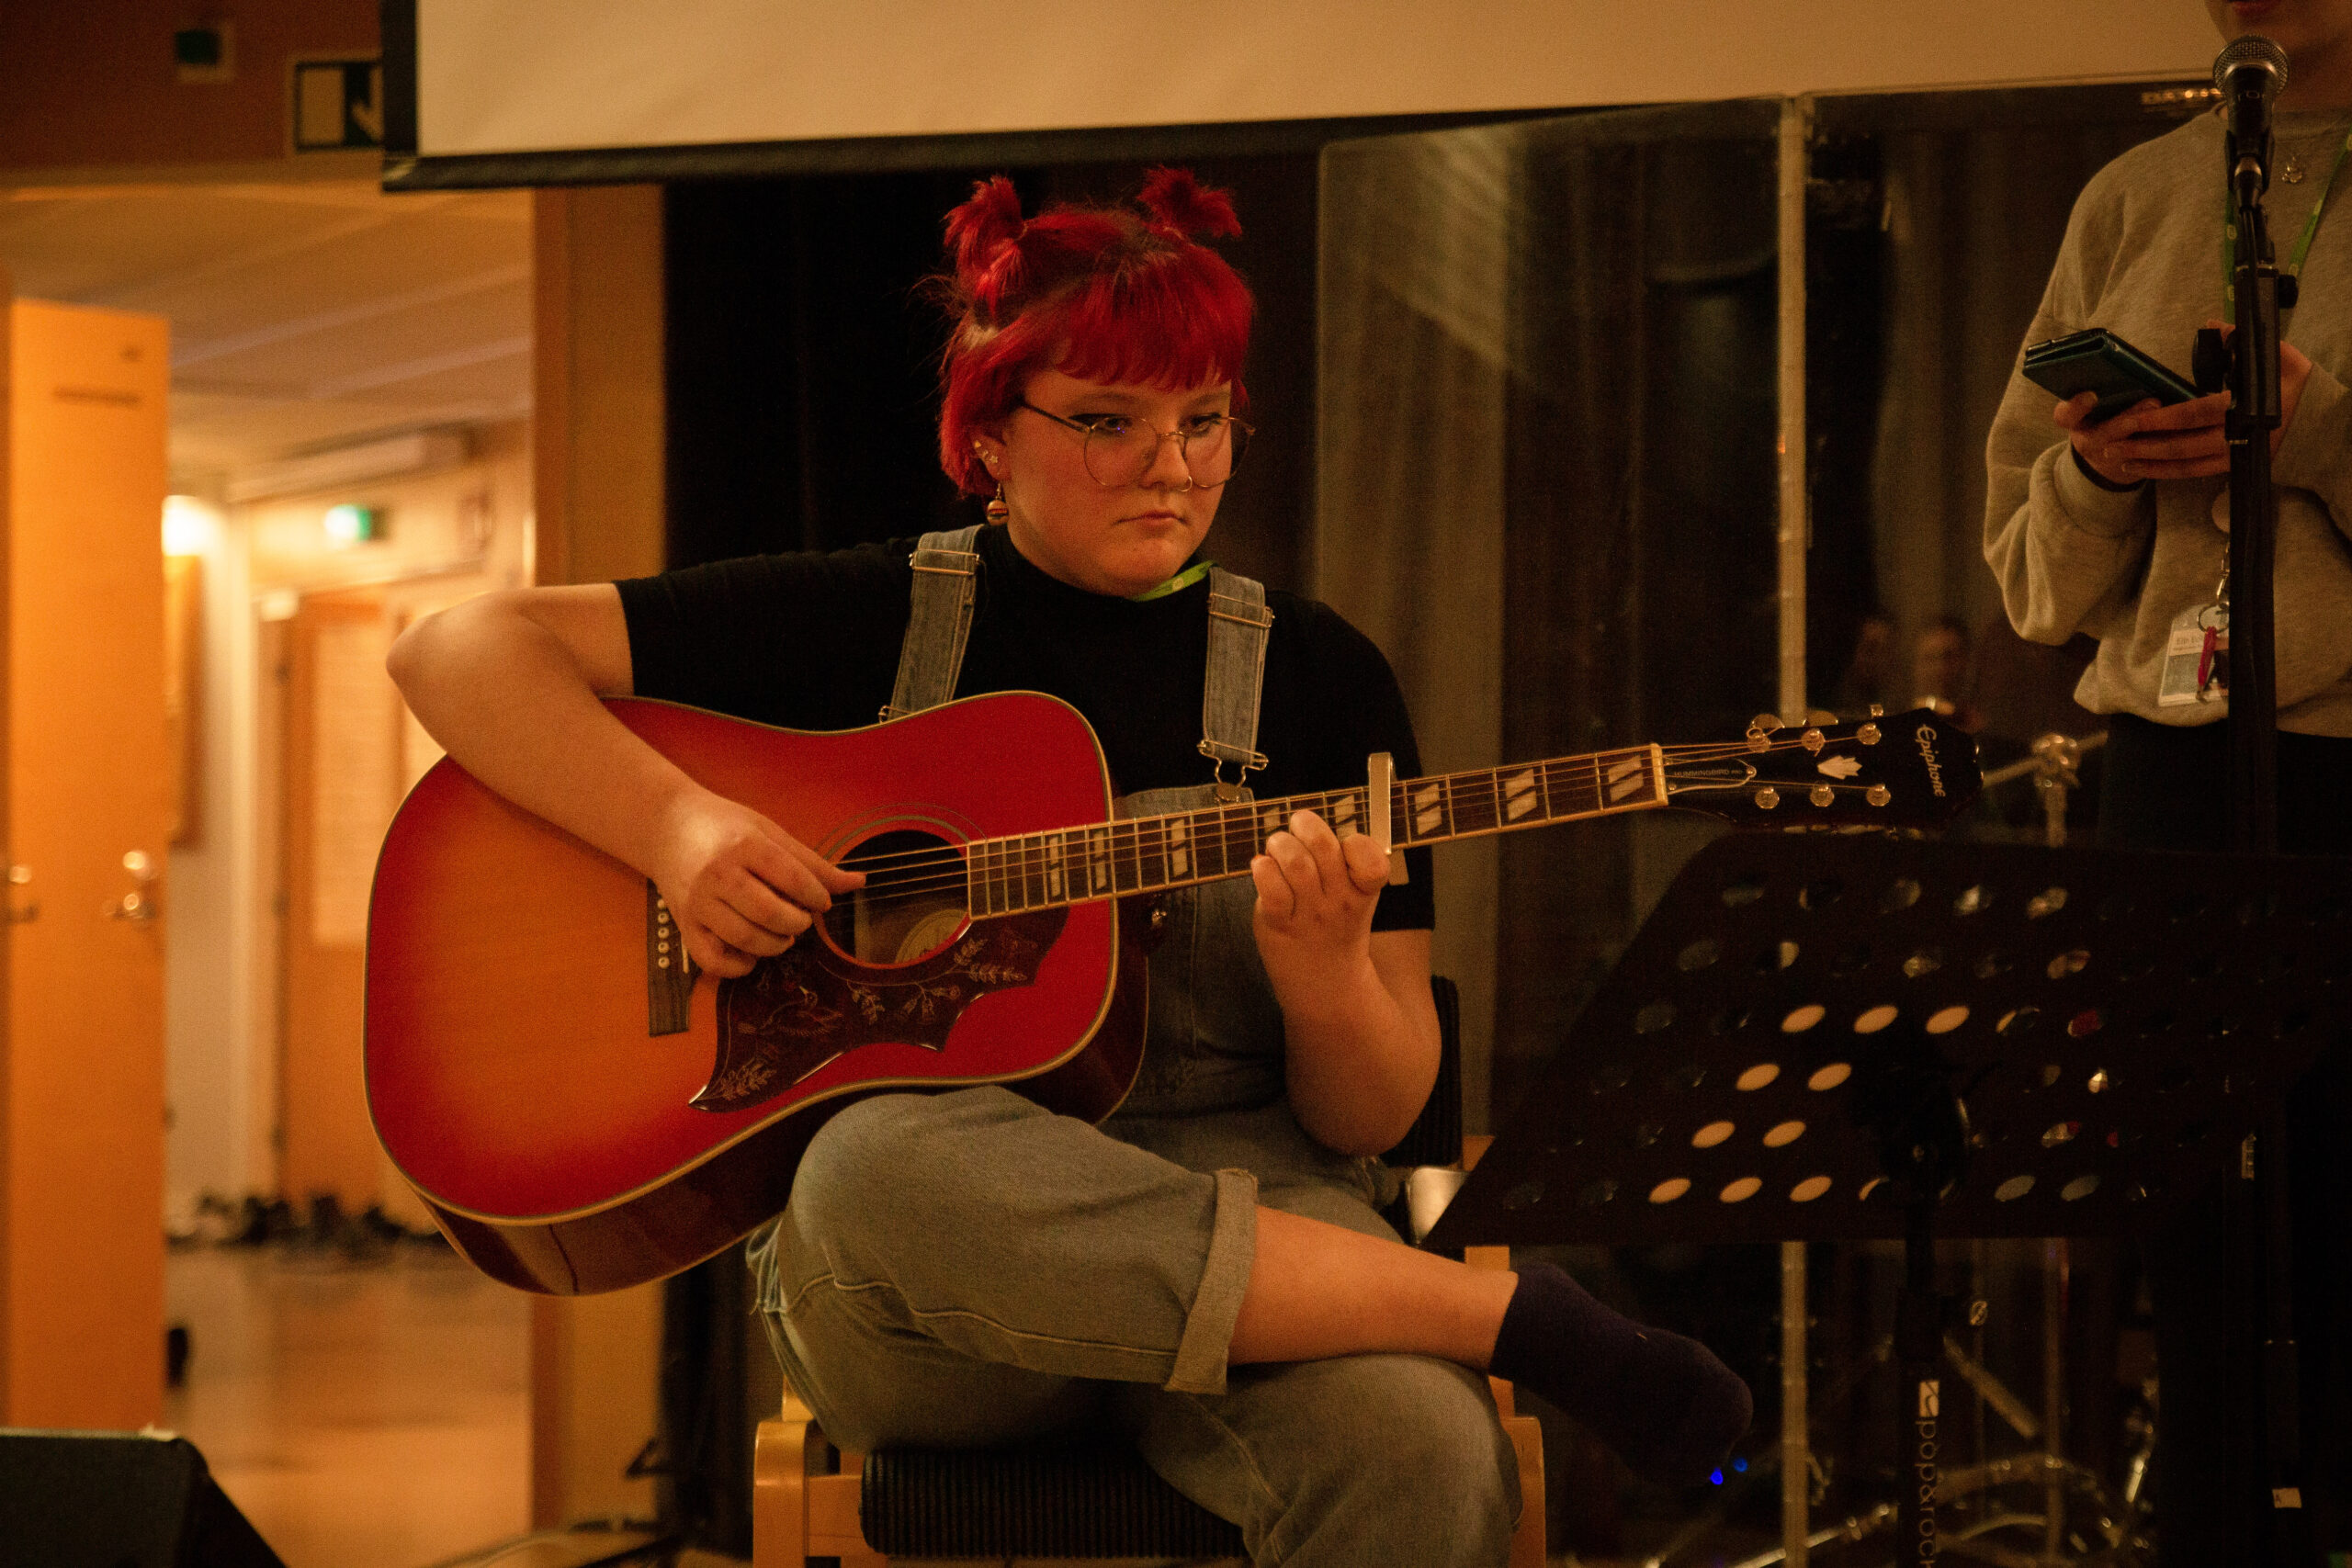 Tonårsflicka med rött hår, glasögon och jeanshalare sitter på stol och spelar gitarr.